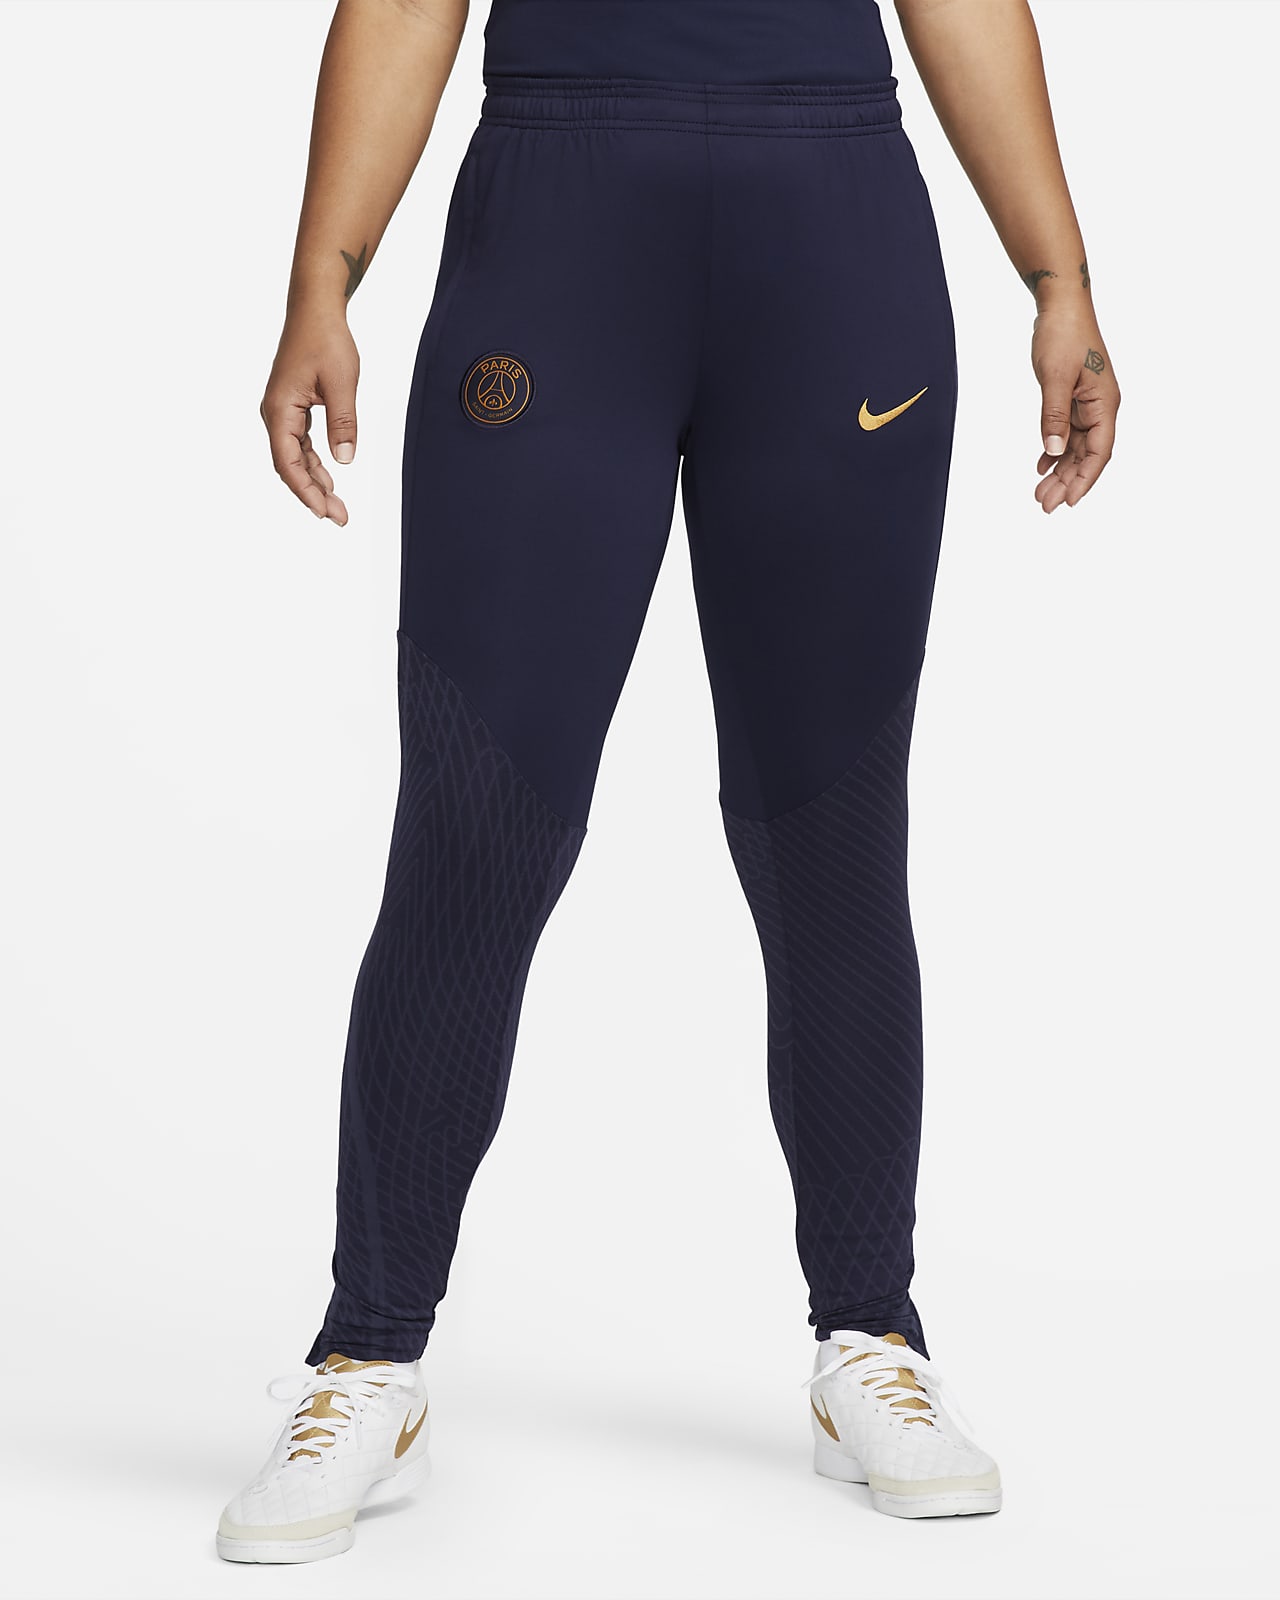 Acquista Pantaloni e Tights da Donna. Nike IT